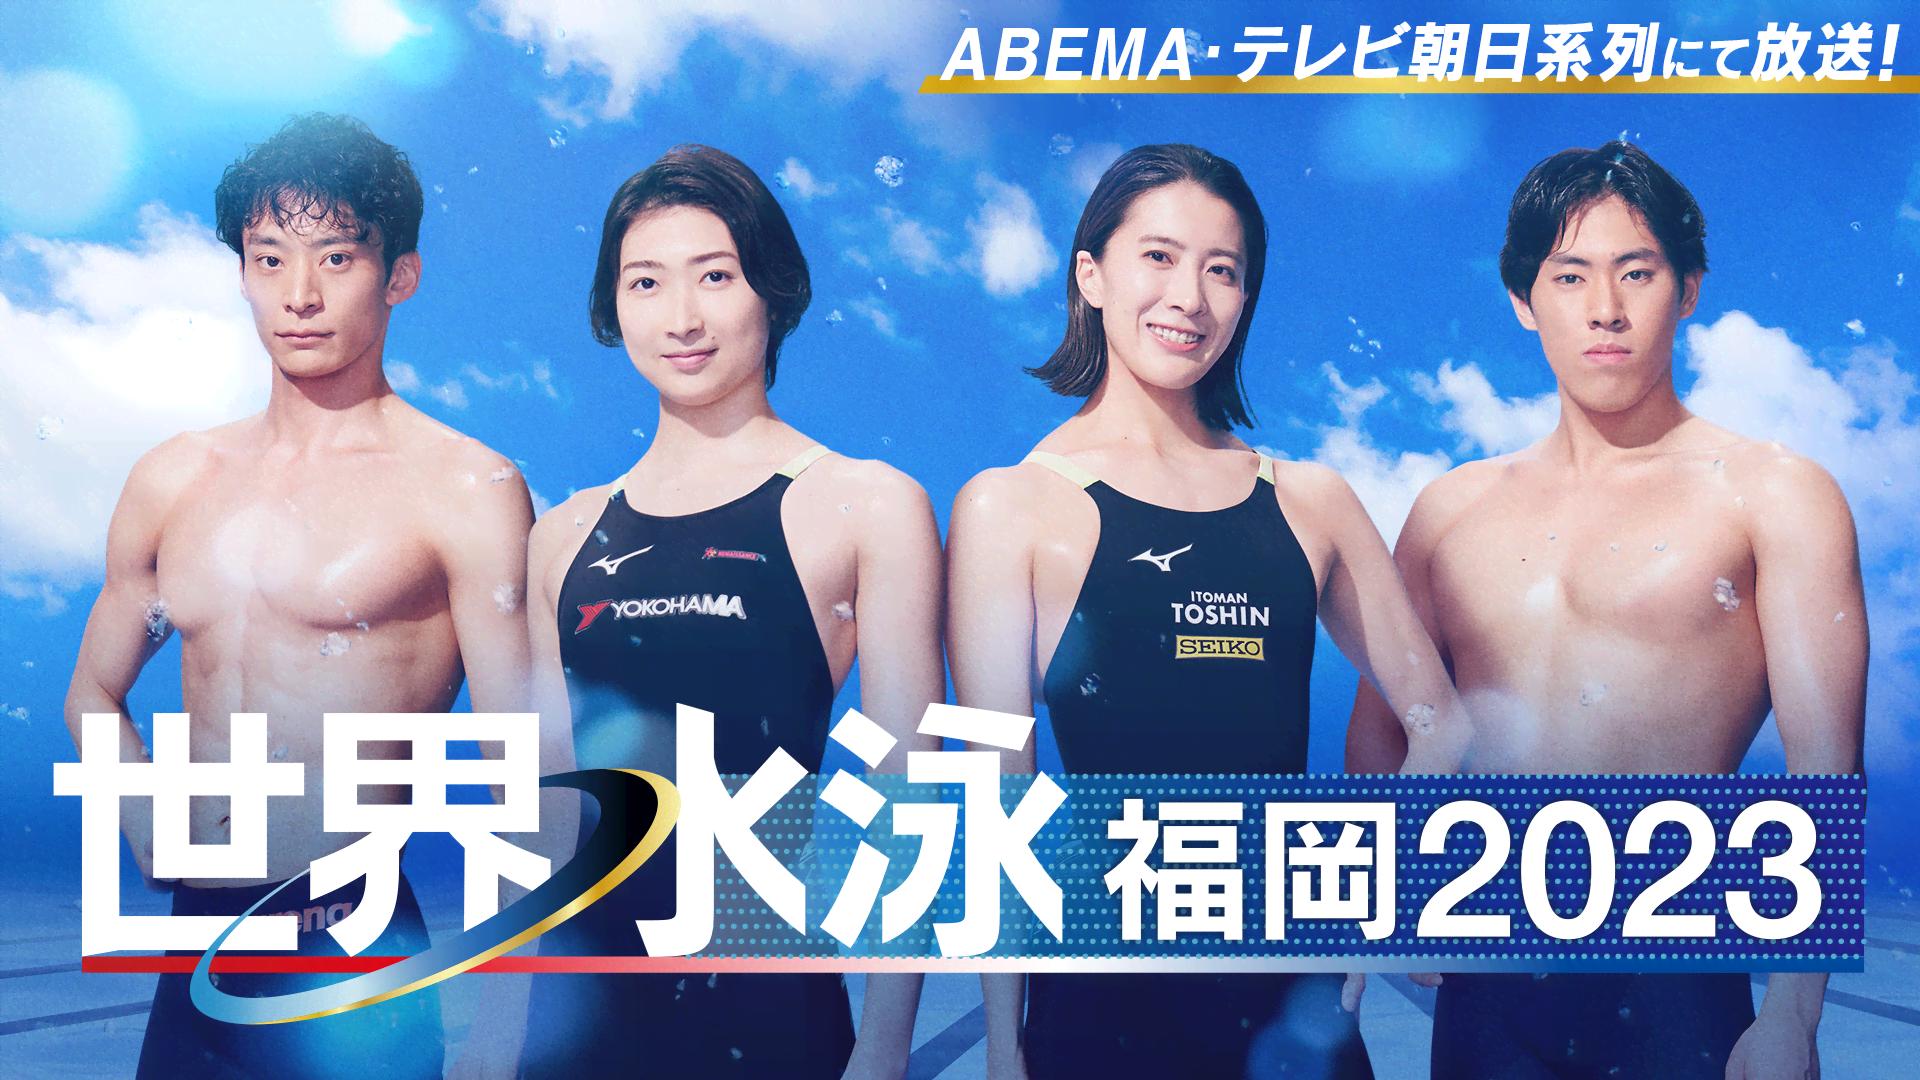 ABEMA「世界水泳福岡2023」